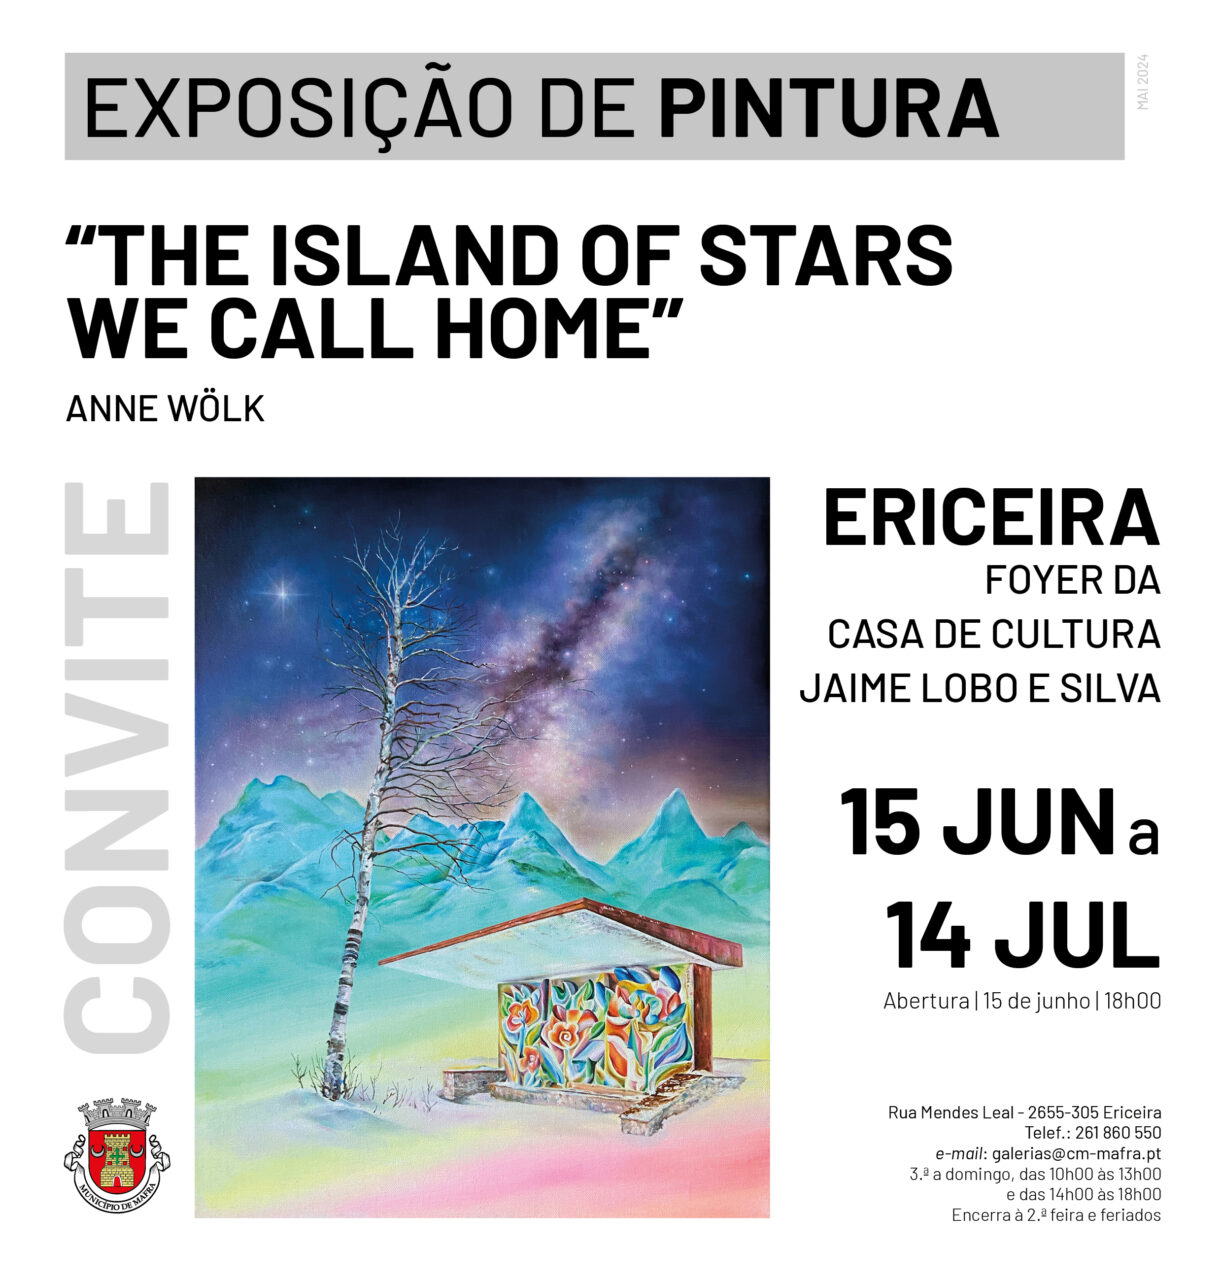 The island of stars we call home,  Casa de Cultura Jaime Lobo e Silva, Ericeira | Mafra, Portugal